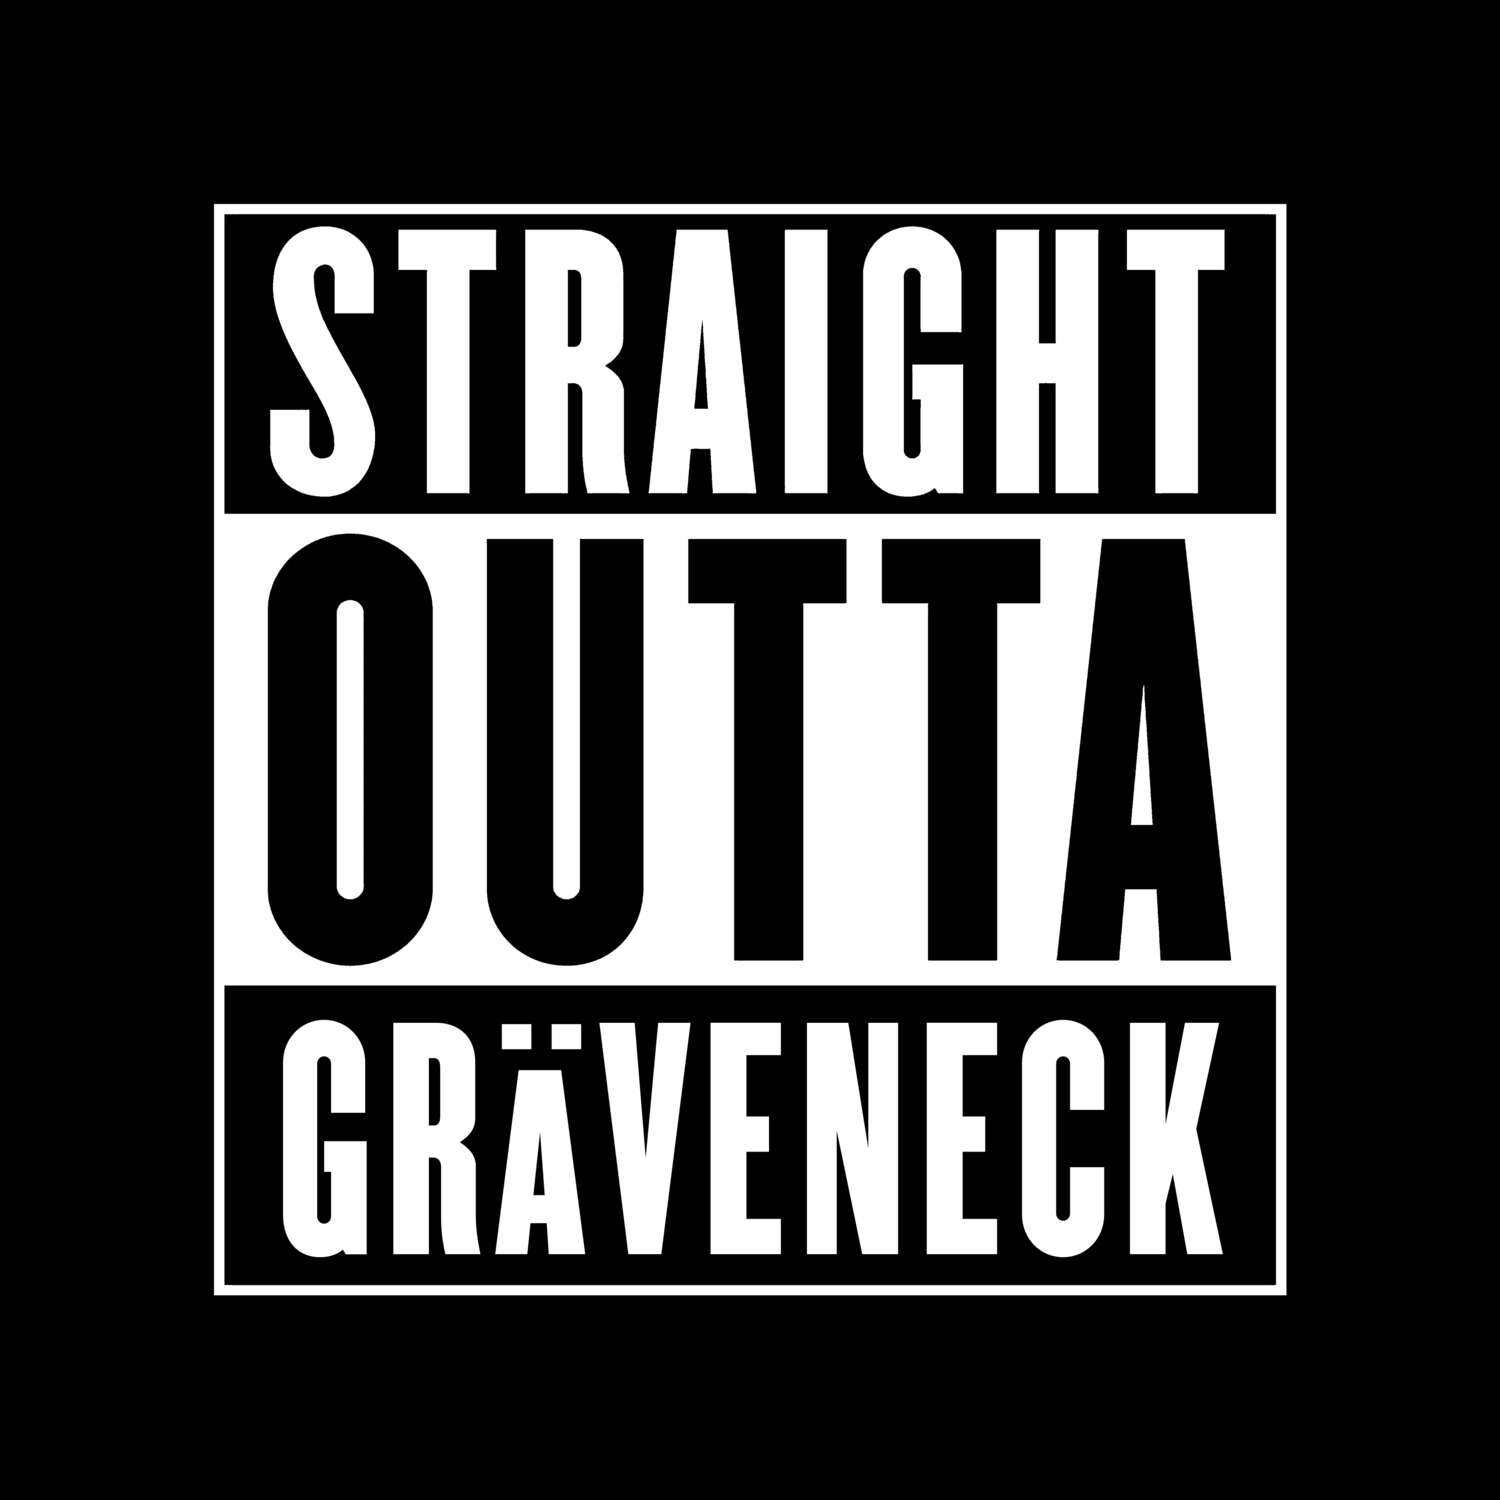 Gräveneck T-Shirt »Straight Outta«